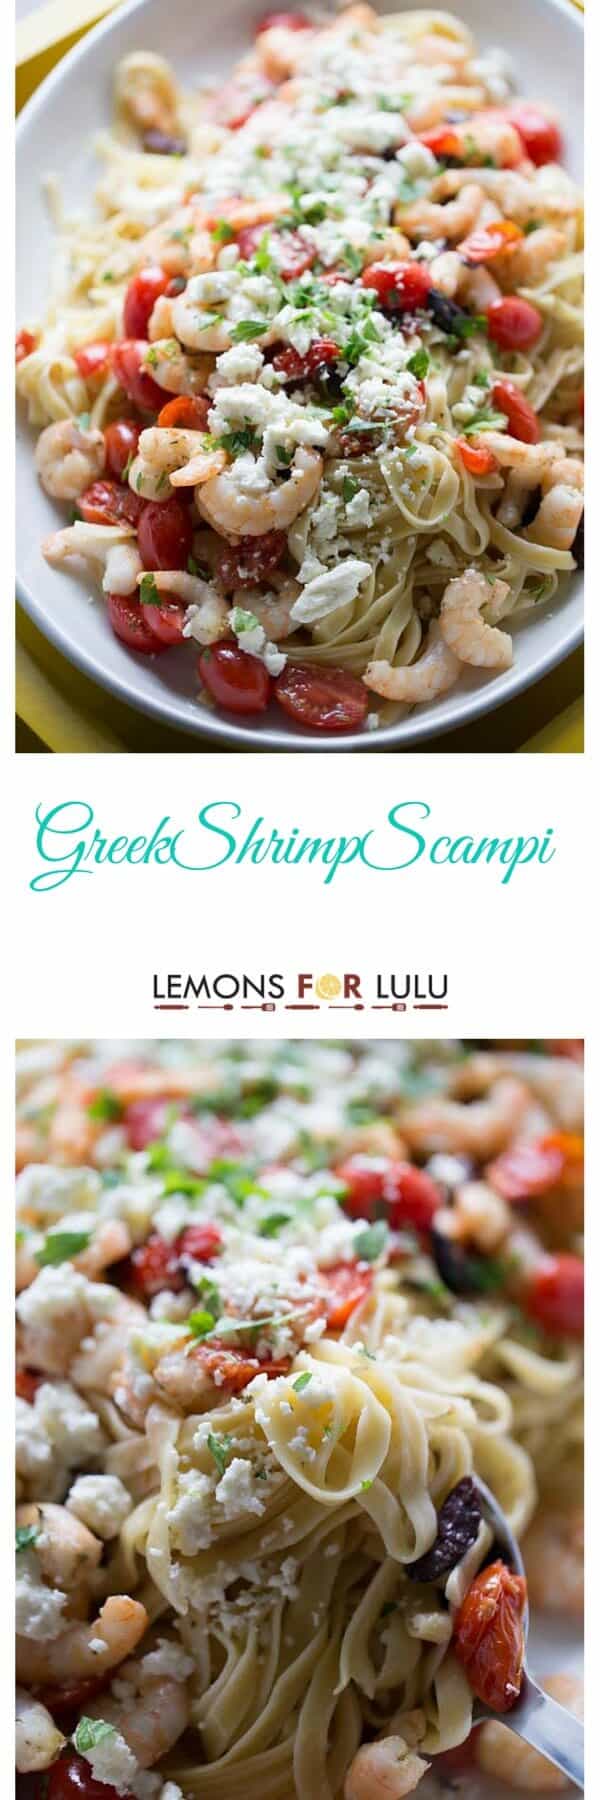 Greek Style Shrimp Scampi - LemonsforLulu.com